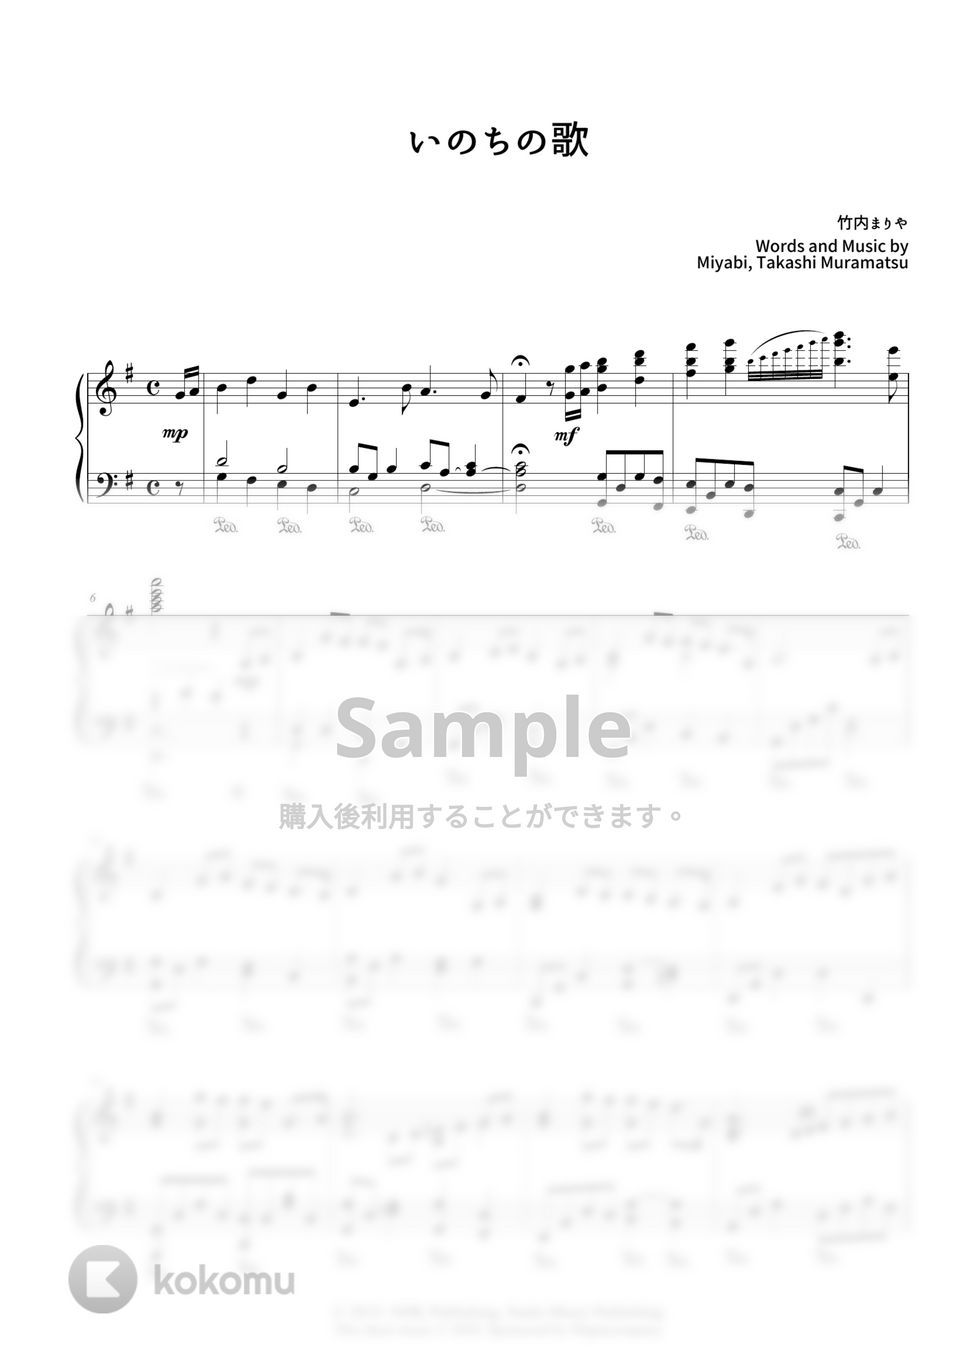 竹内まりや - いのちの歌 by CANACANA family